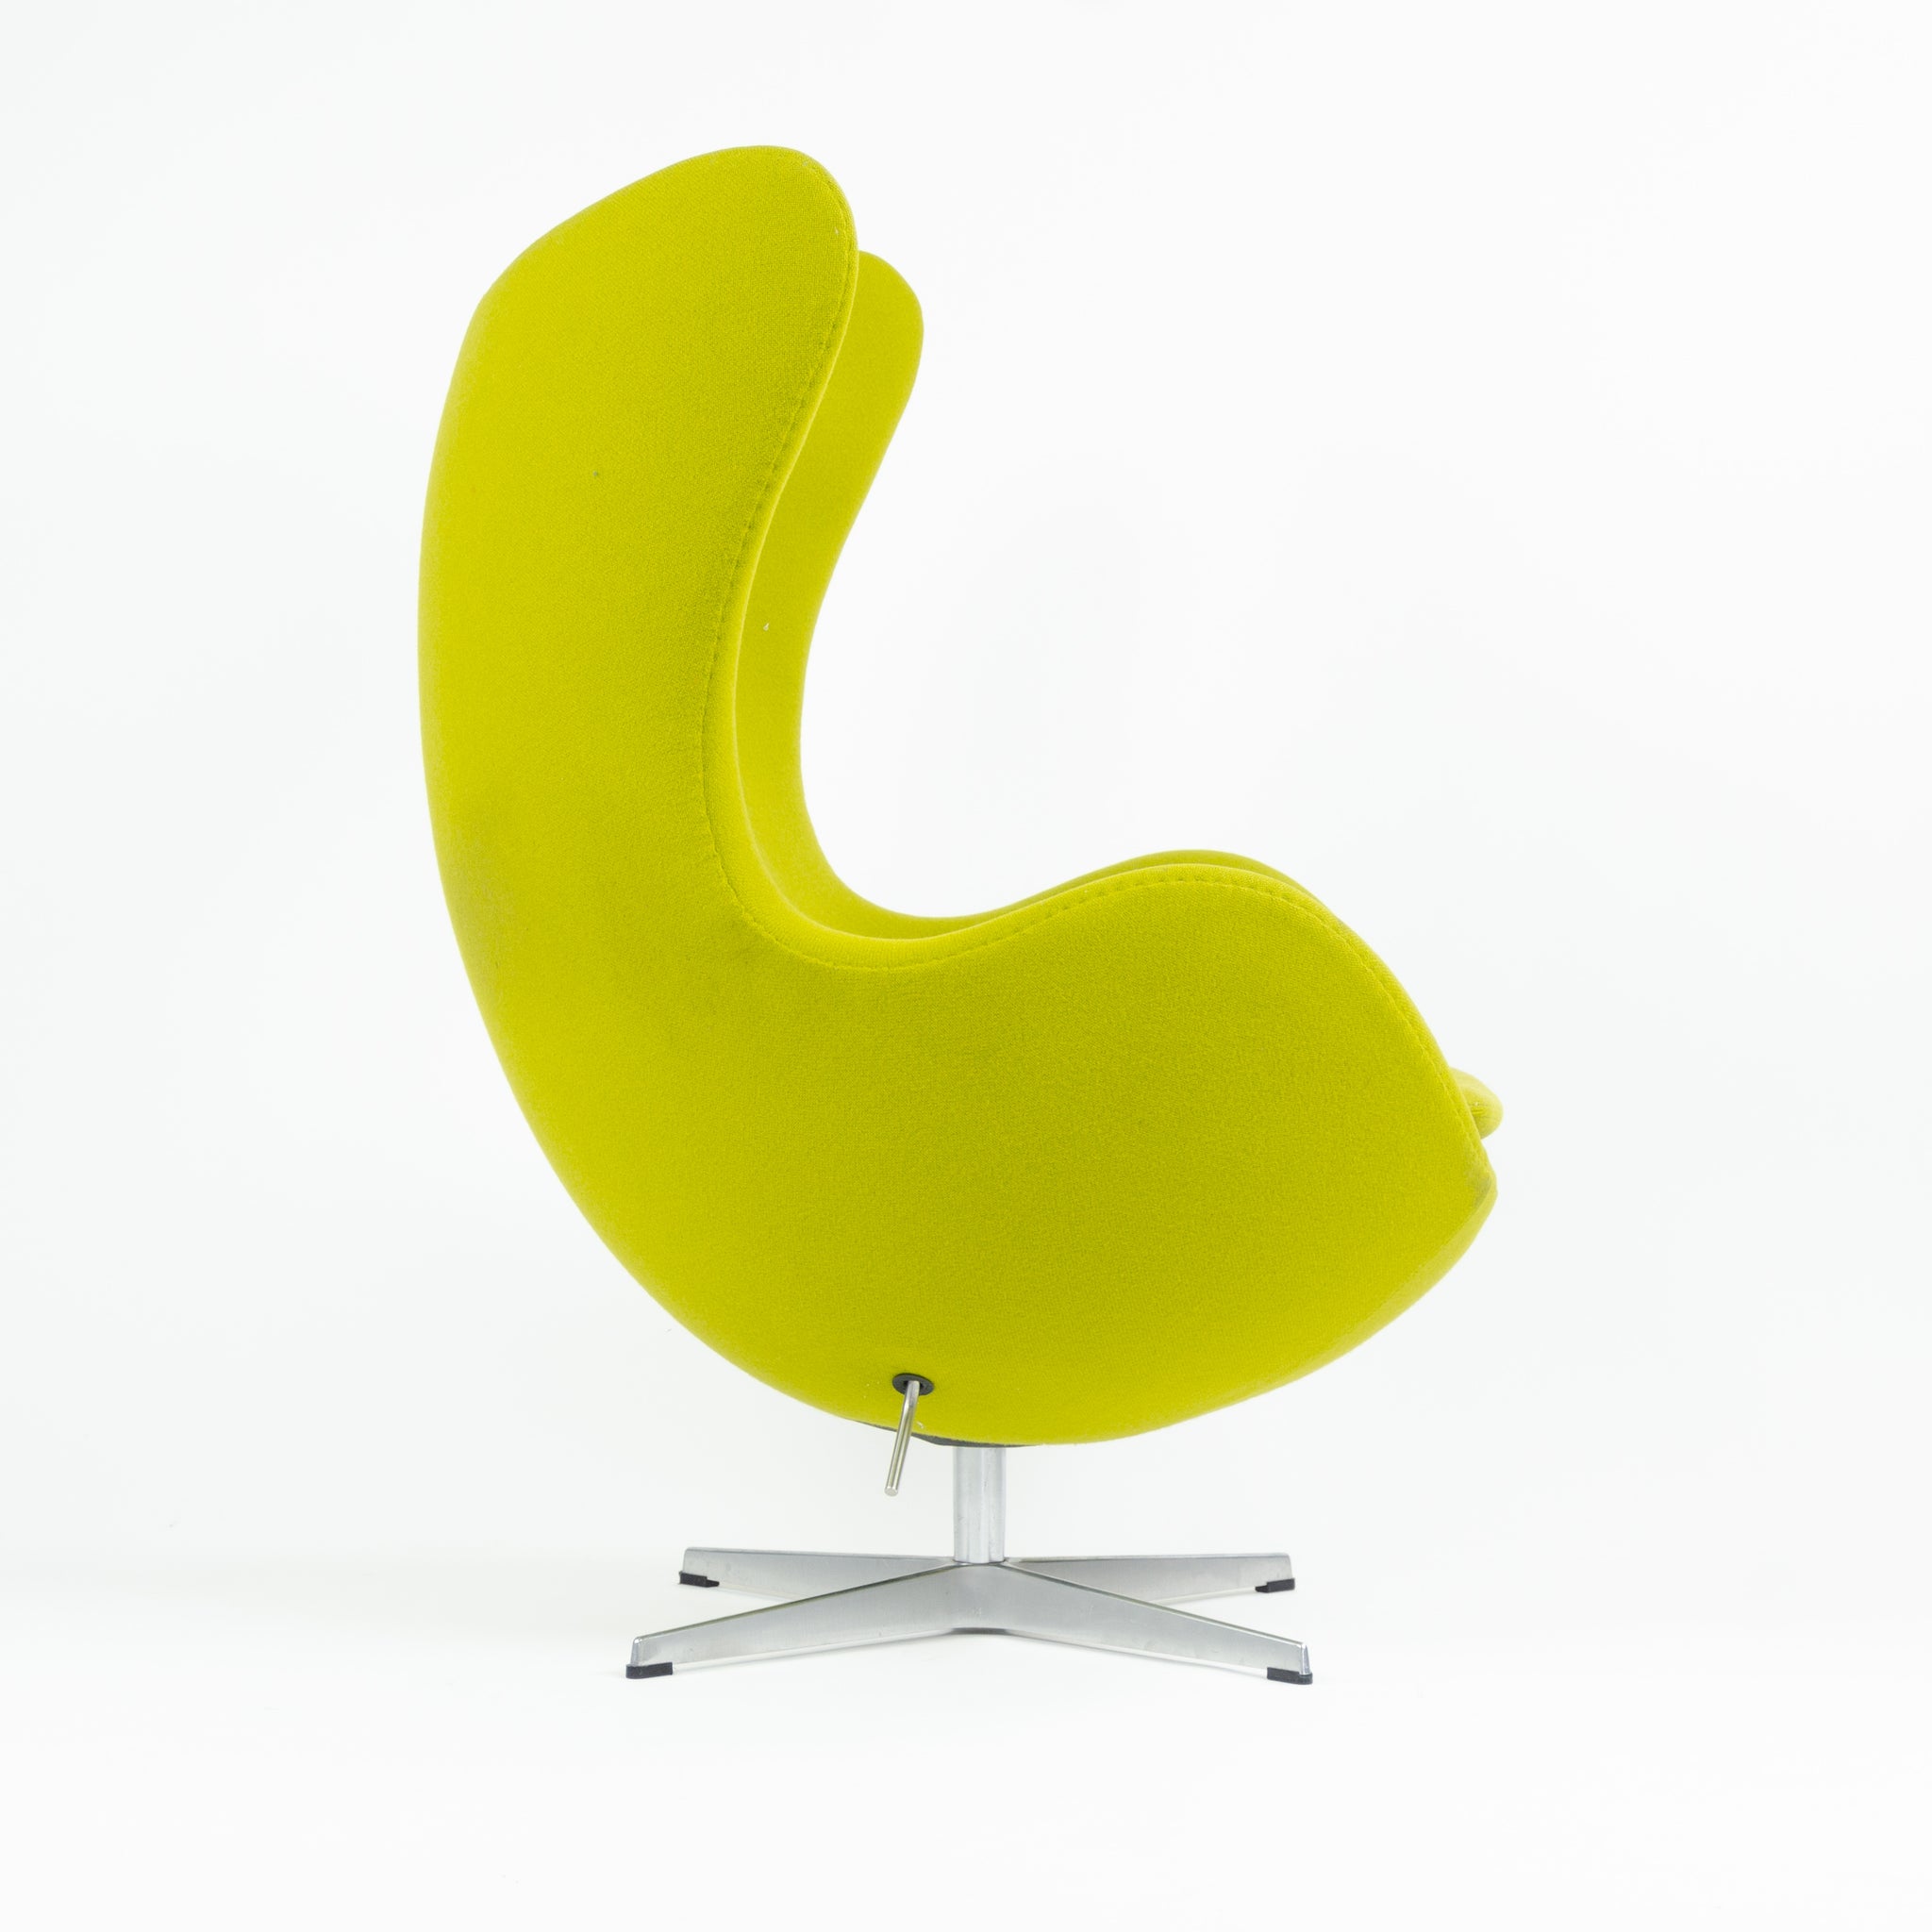 SOLD 2003 Egg Chair by Arne Jacobsen for Fritz Hansen Original Fabric Denmark Green